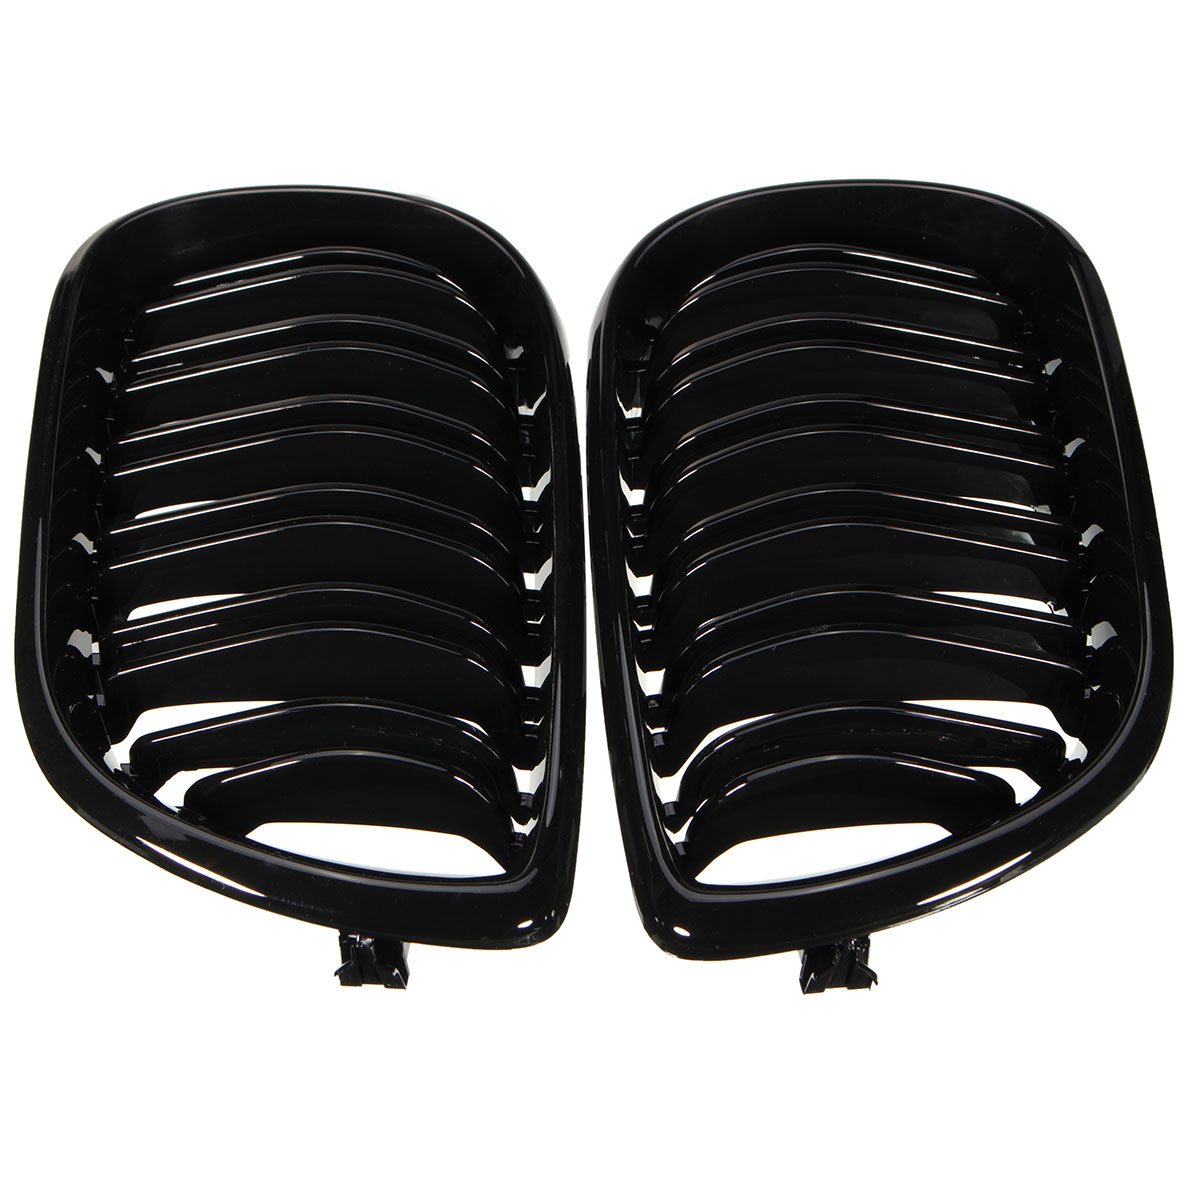 

Двухслойная решетка Глянцевая черная передняя решетка для BMW E46 4-DOOR 3 Series 02-04